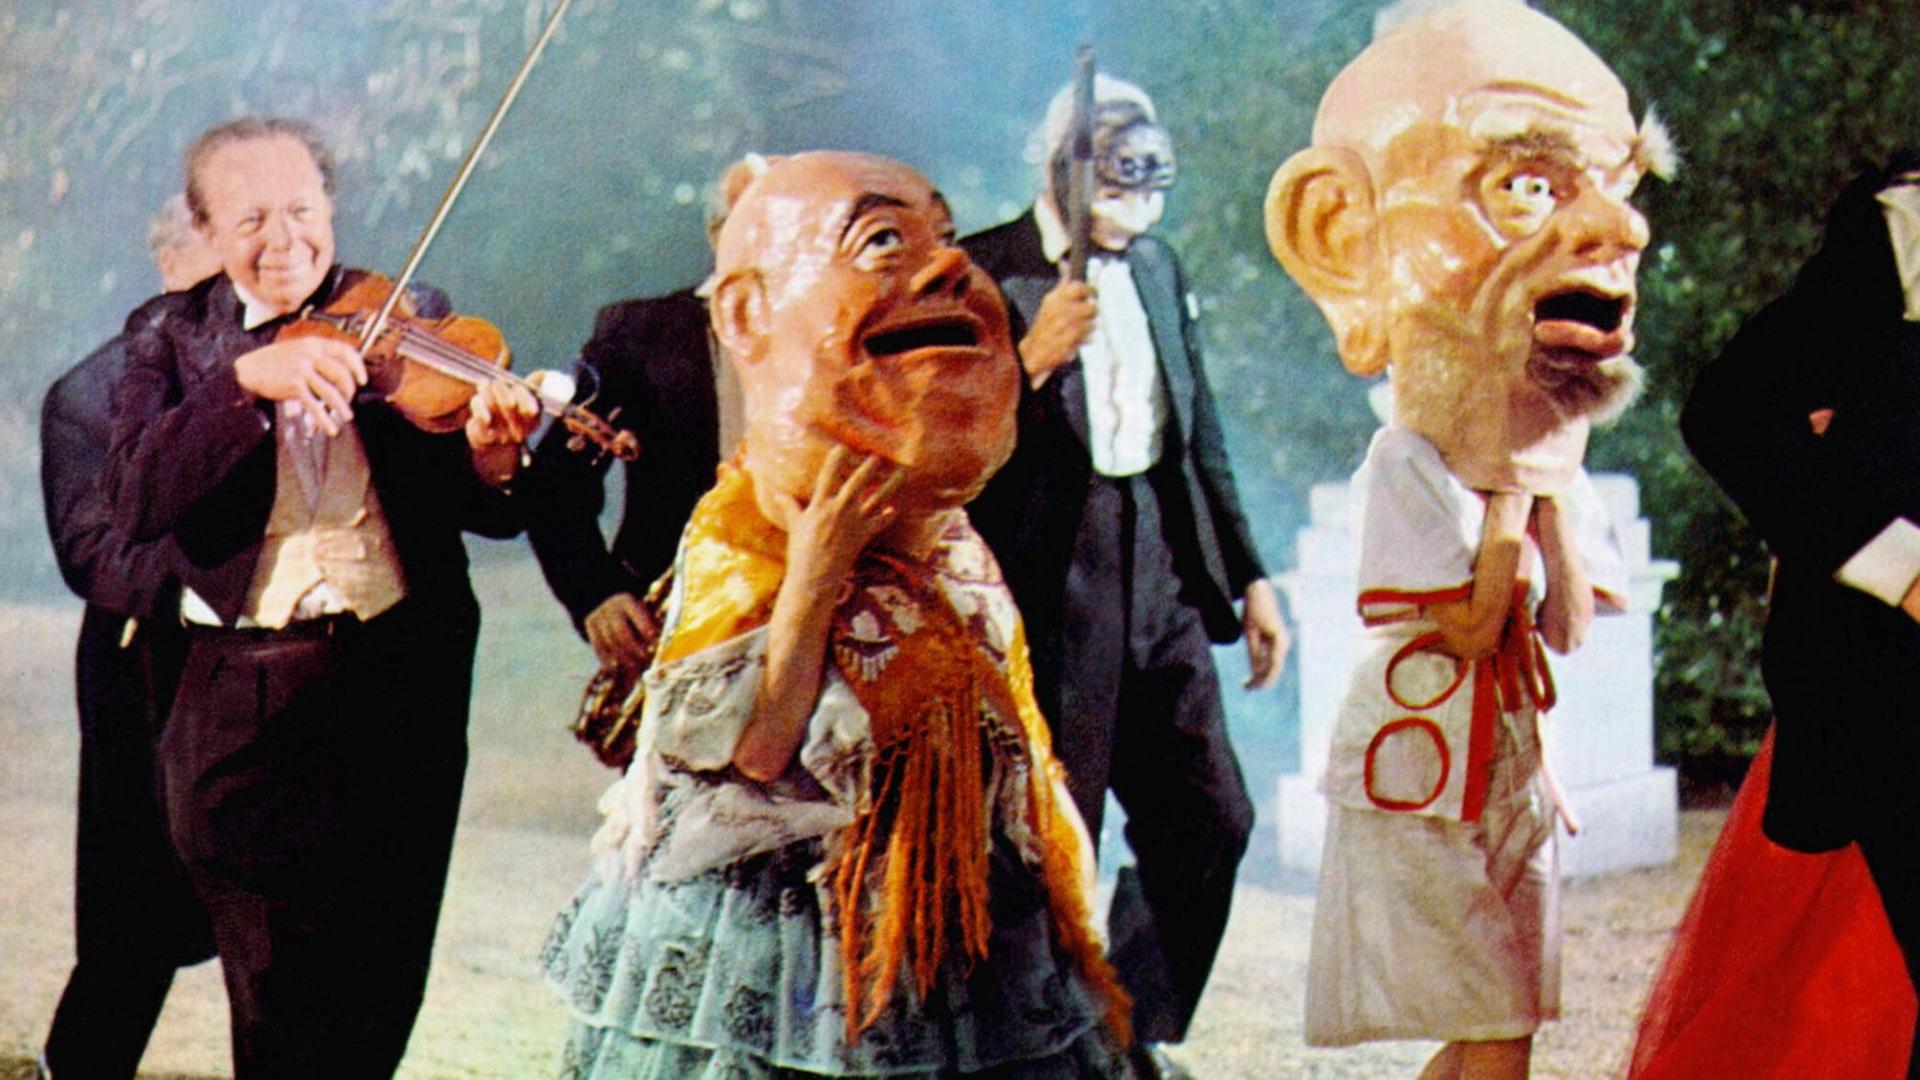 Szenenfoto aus dem Film Zardoz. Es schein eine Art Parade zu sein, links geht ein Geige-spielender Mann im Frack, neben ihm ebenso dunkel gekleidete Gestalten mit Blasinstrumenten und mit Masken, im Vordergrund rechts zwei große Figuren mit überdimensionalen Pappmaché-Köpfen